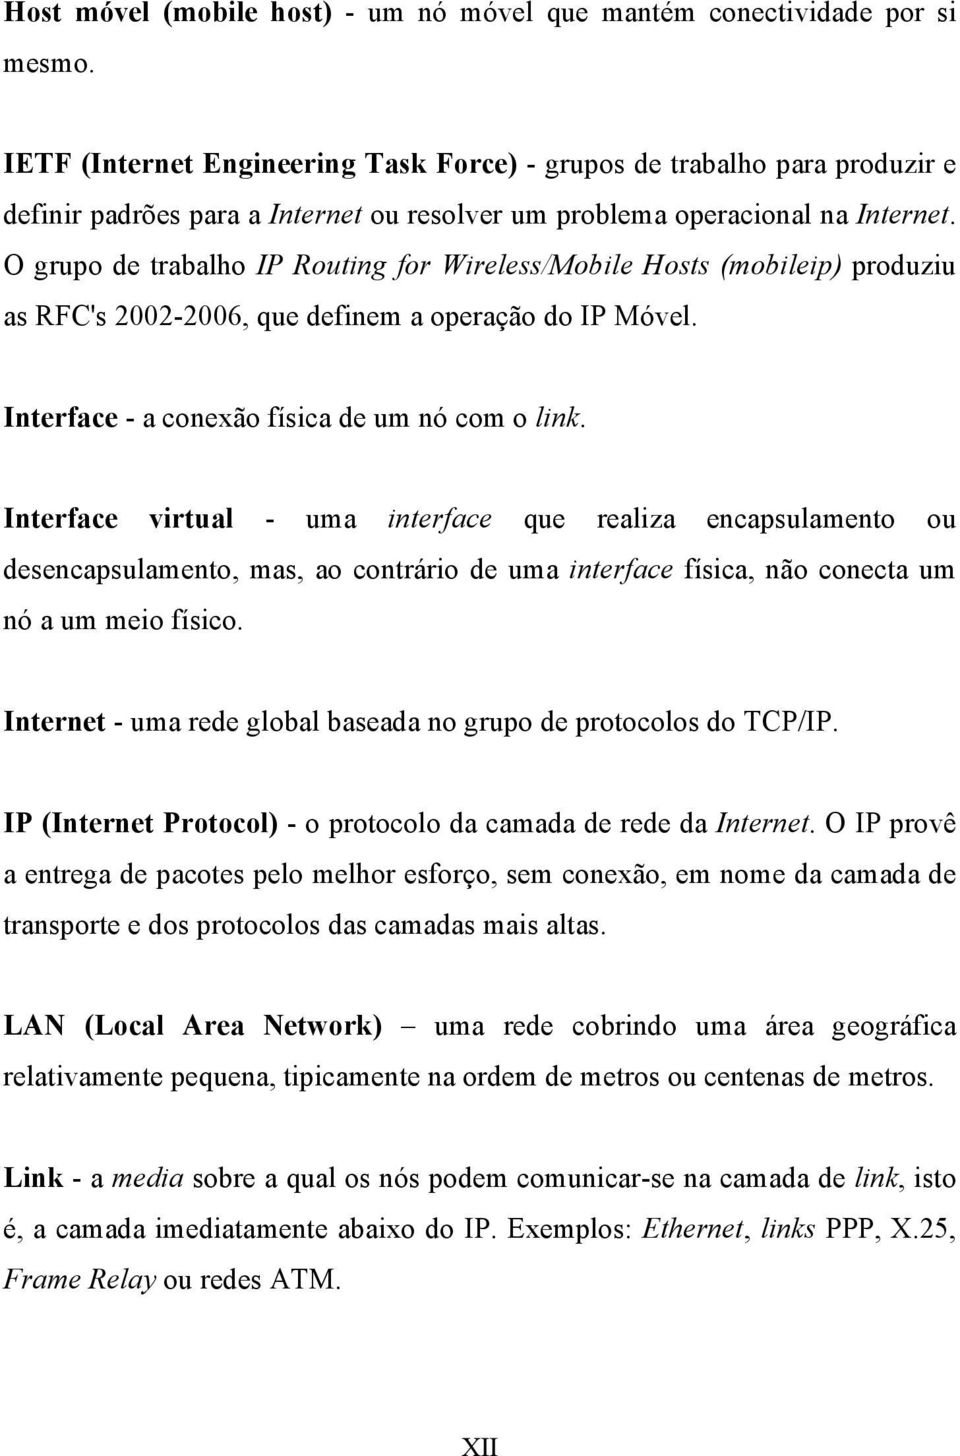 O grupo de trabalho IP Routing for Wireless/Mobile Hosts (mobileip) produziu as RFC's 2002-2006, que definem a operação do IP Móvel. Interface - a conexão física de um nó com o link.